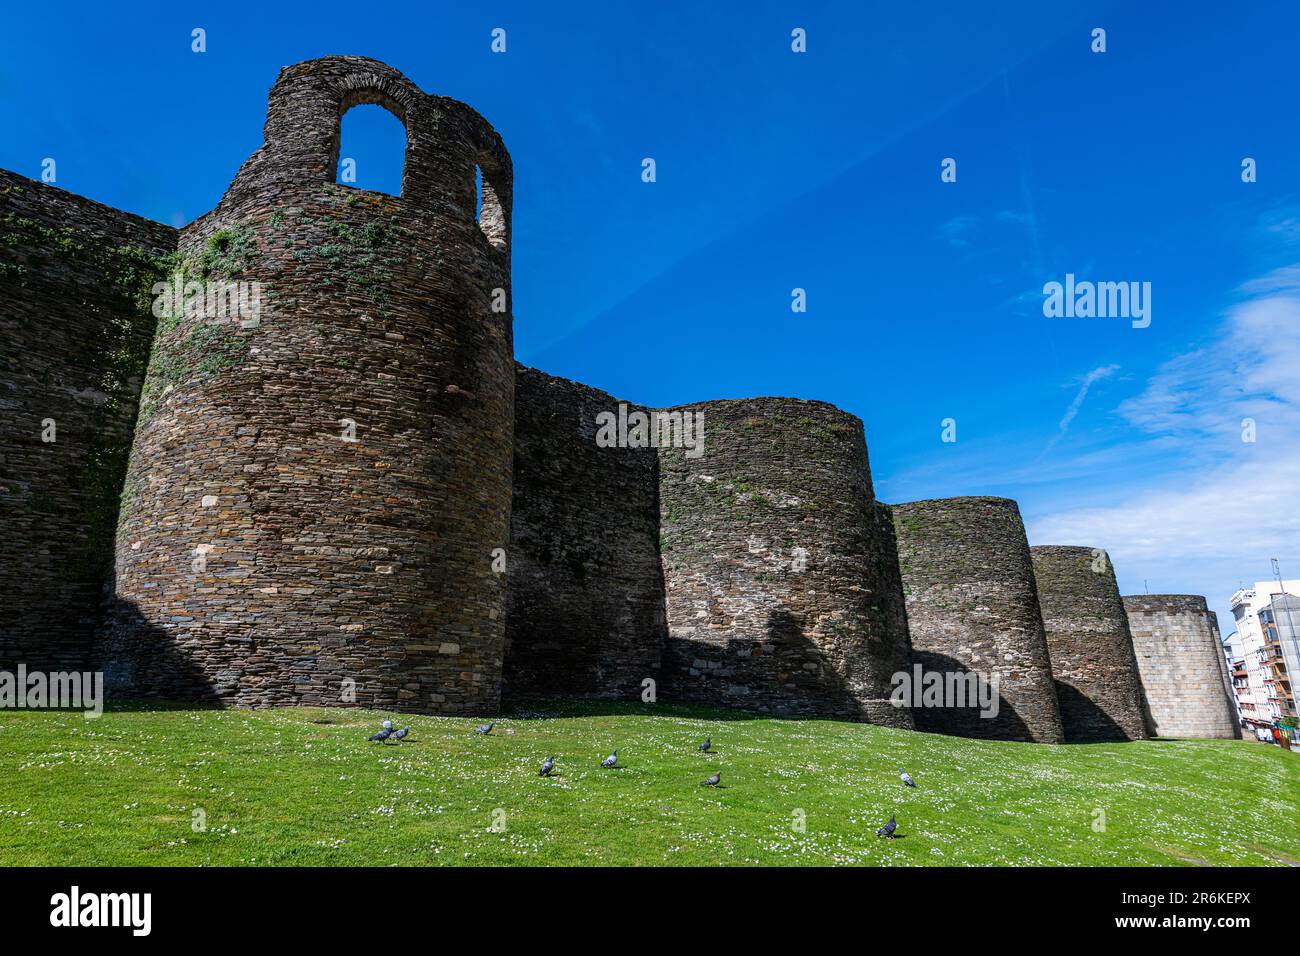 La città fortificata romana di Lugo, patrimonio dell'umanità dell'UNESCO, Galizia, Spagna, Europa Foto Stock